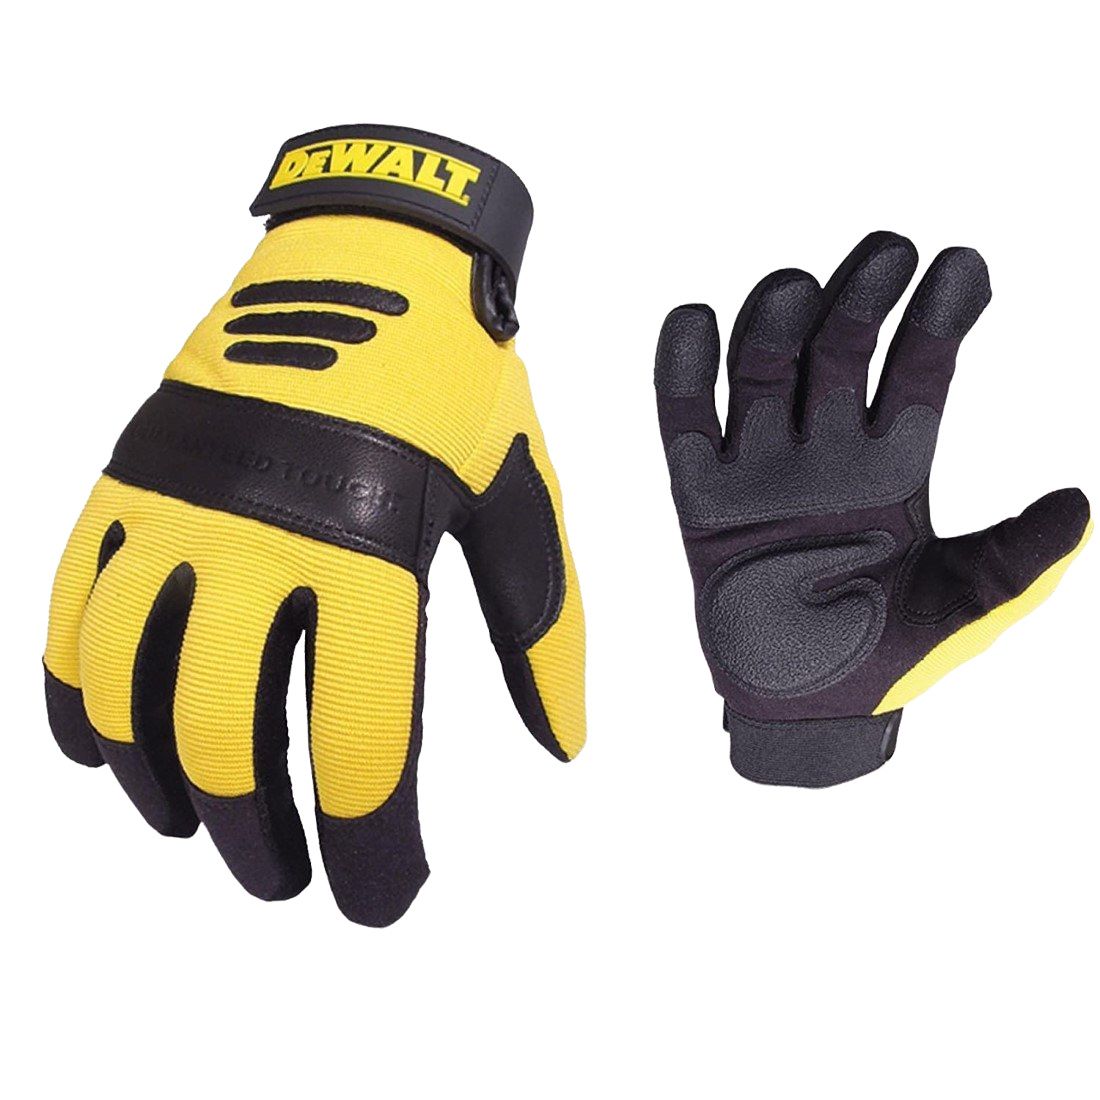 DeWalt Safety Gloves